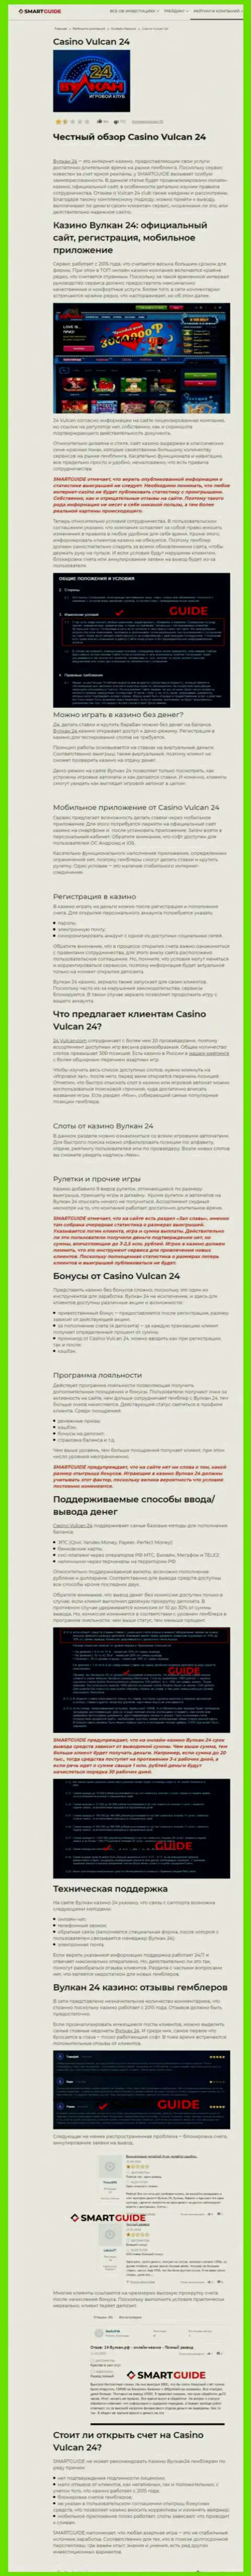 Вулкан-24 Ком - это организация, зарабатывающая на грабеже депозитов собственных клиентов (обзор проделок)